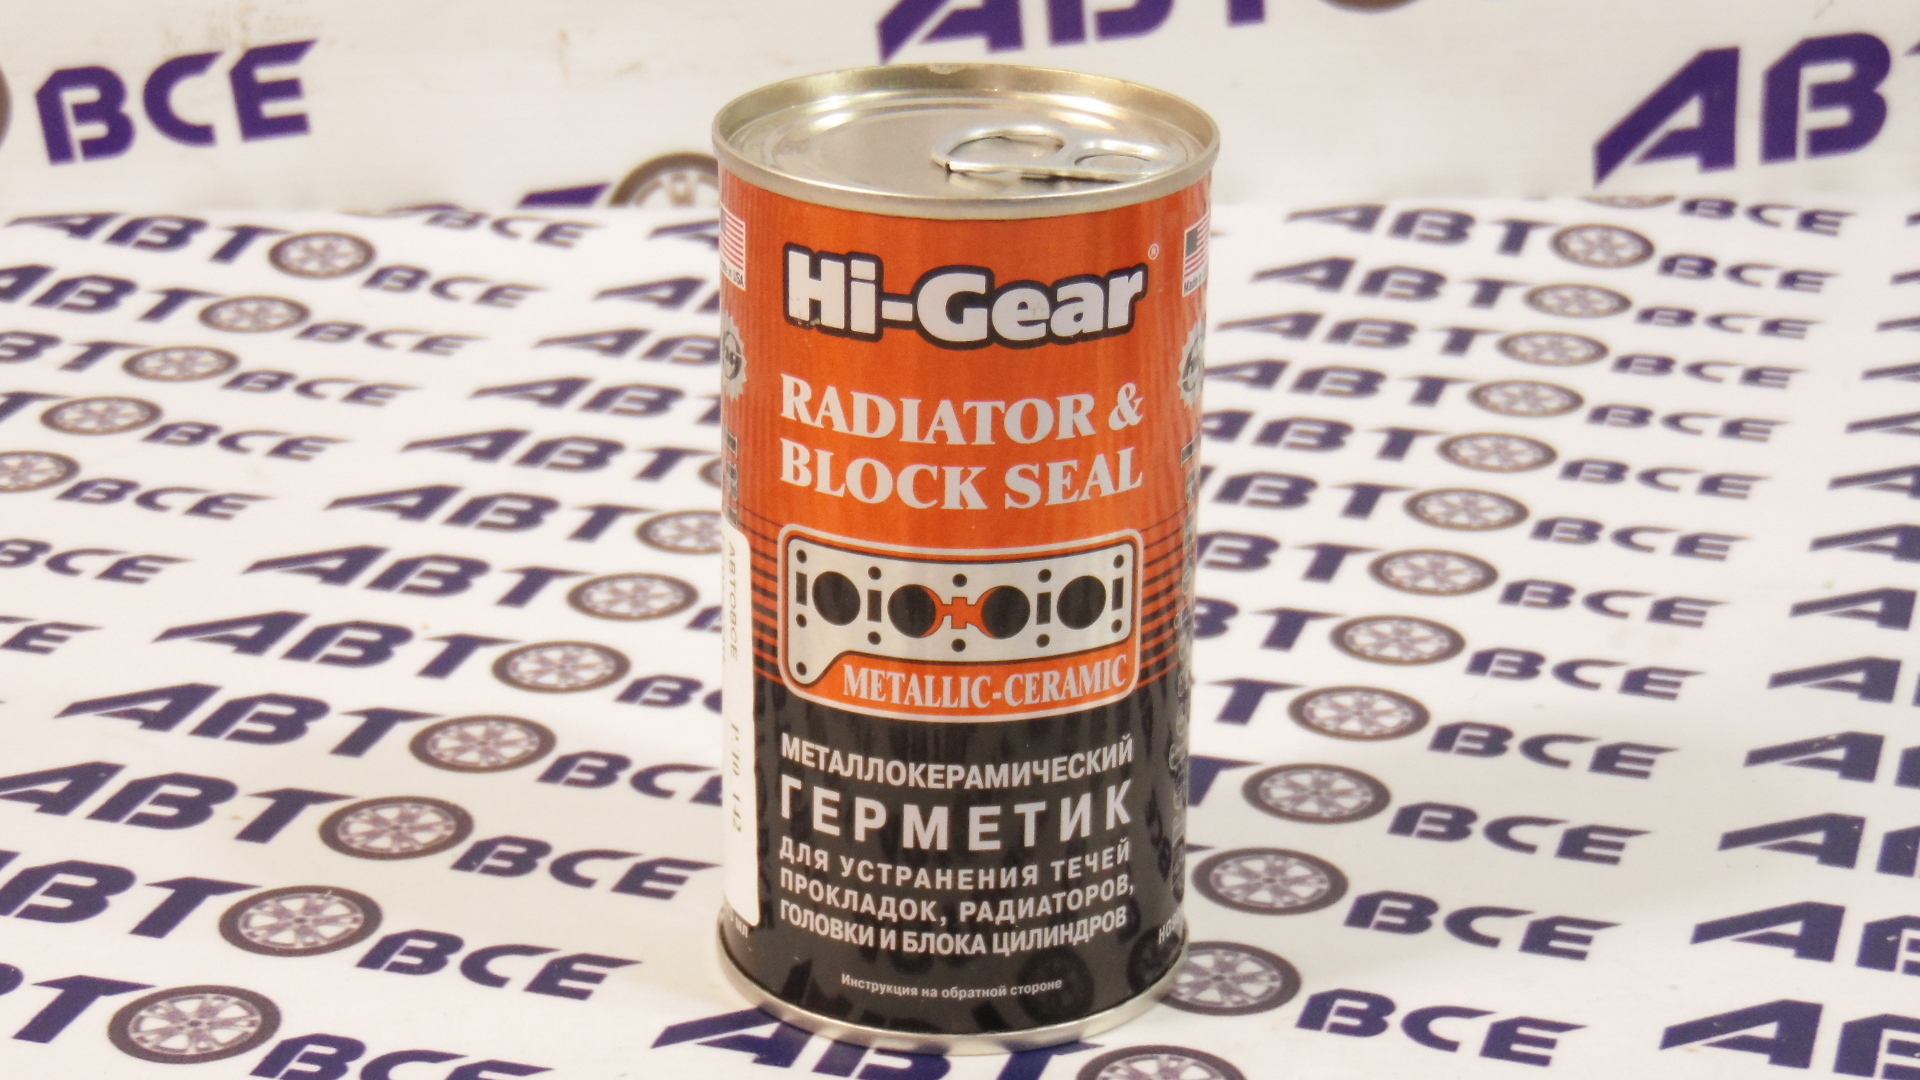 Герметик металлокерамический для прокладок и радиаторов HI-GEAR